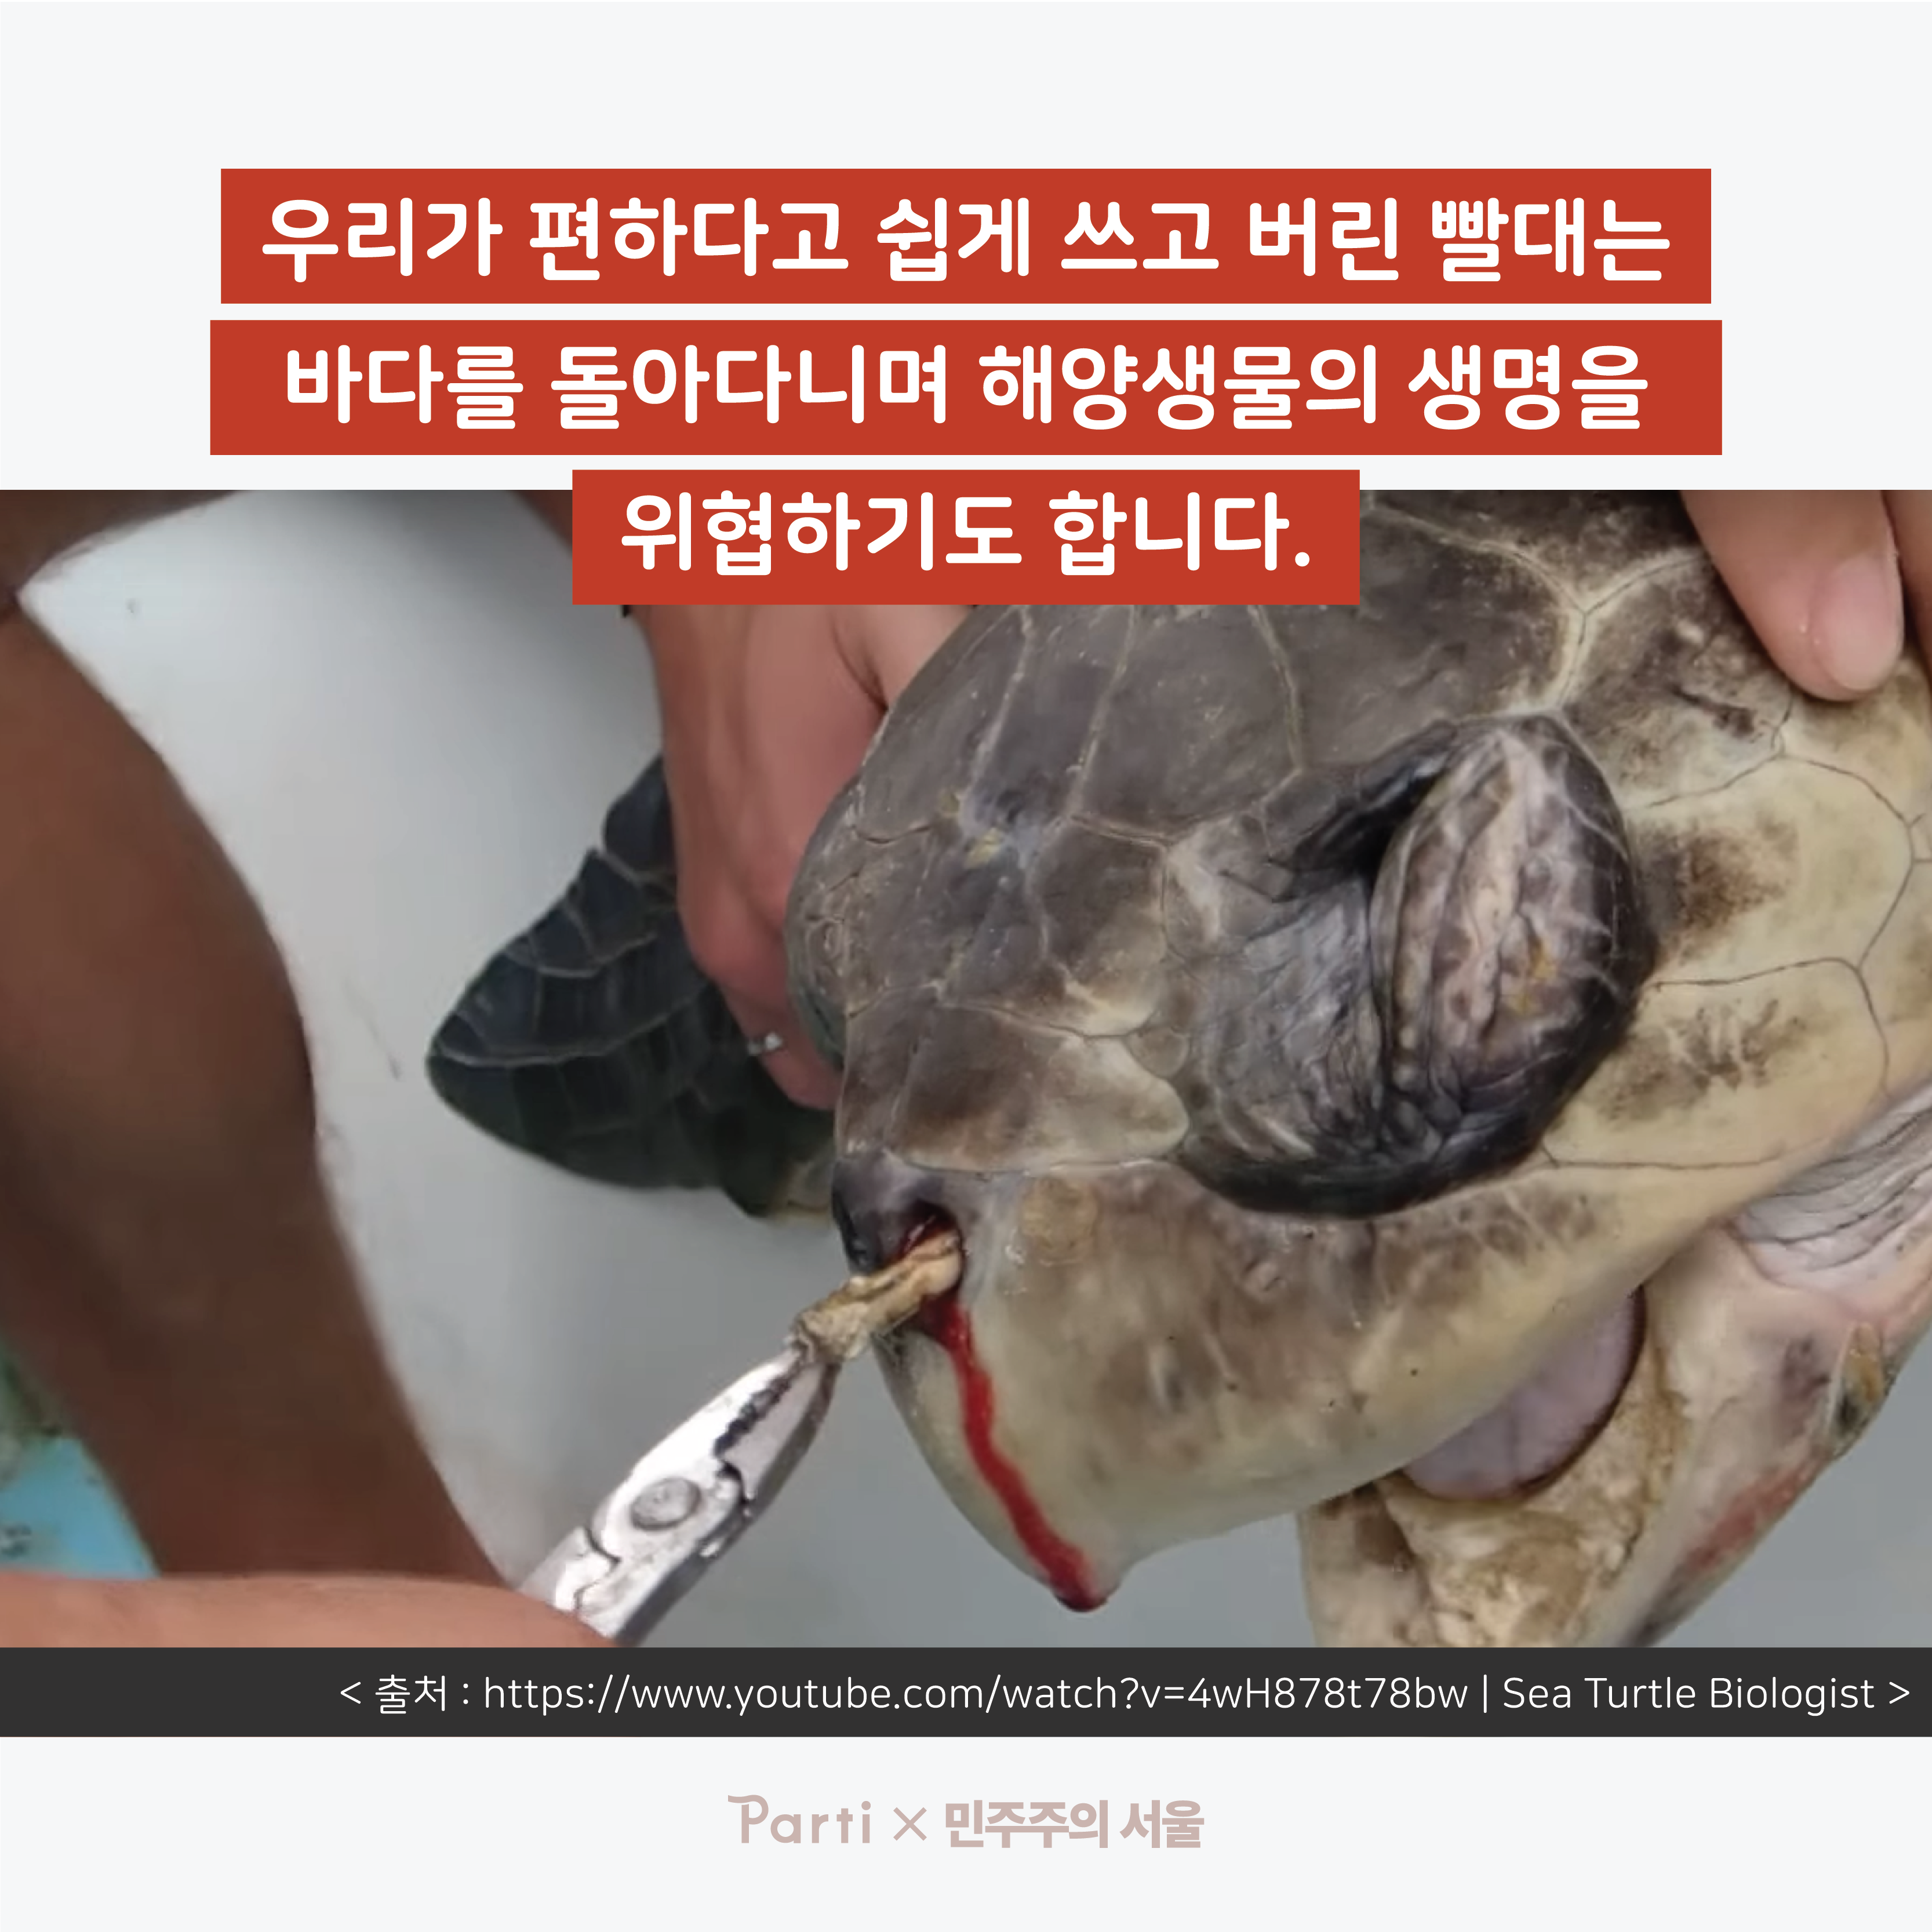 우리가 편하다고 쉽게 쓰고 버린 빨대는 바다를 돌아다니며 해양생물의 생명을 위협하기도 합니다. (출처 : http://www.youtube.com/watch?v=4wH878t78bw｜Sea Turtle Biologist